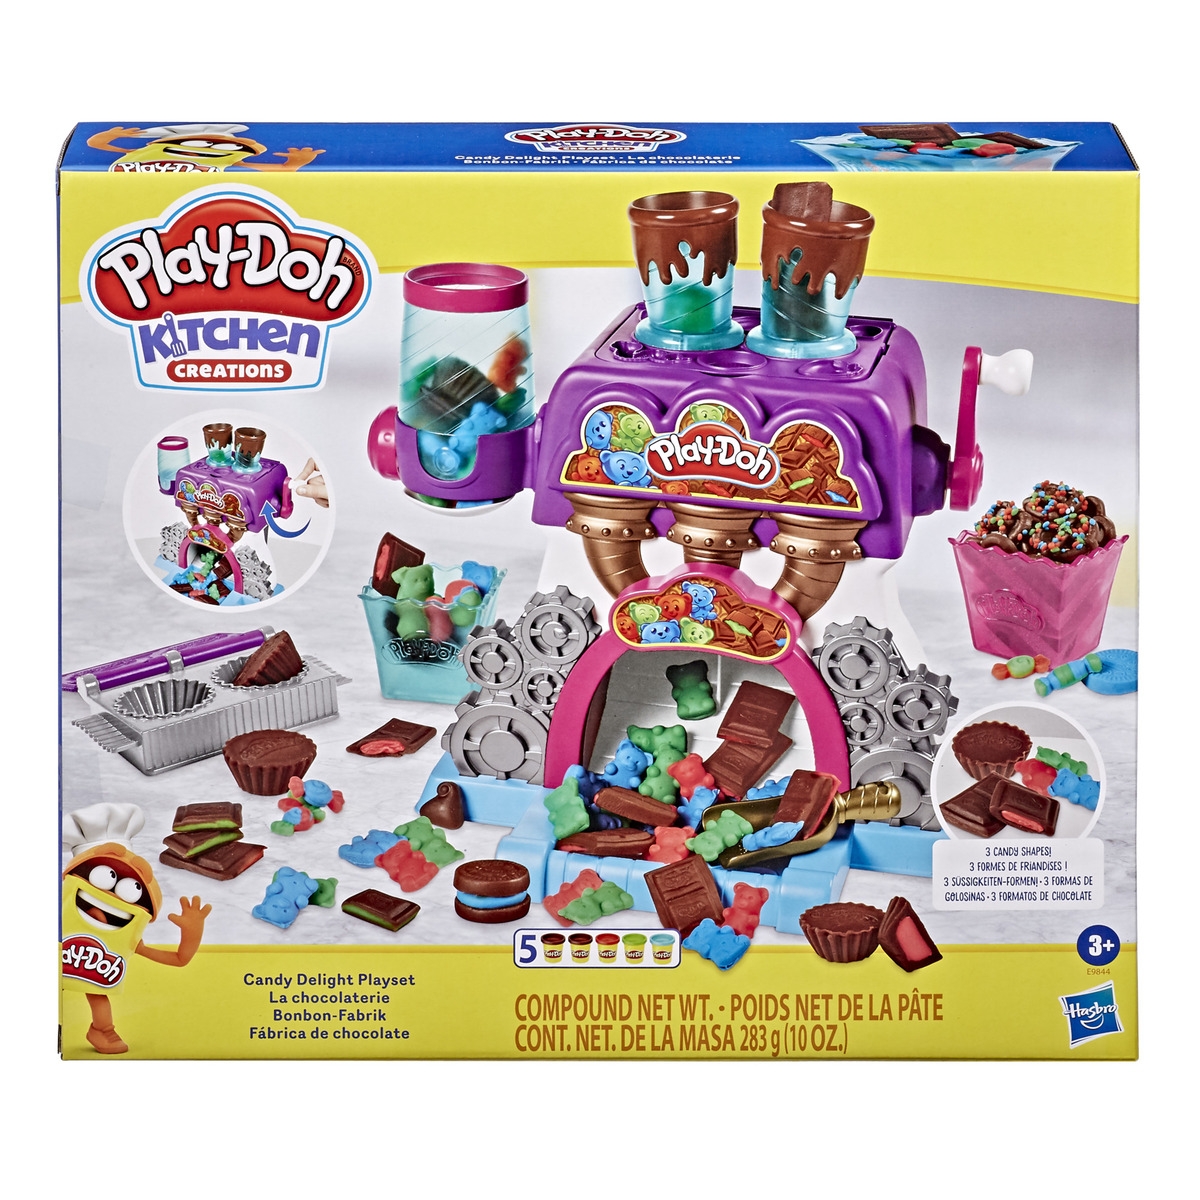 Play-Doh Kitchen , La chocolaterie avec 5 couleurs de pâte à